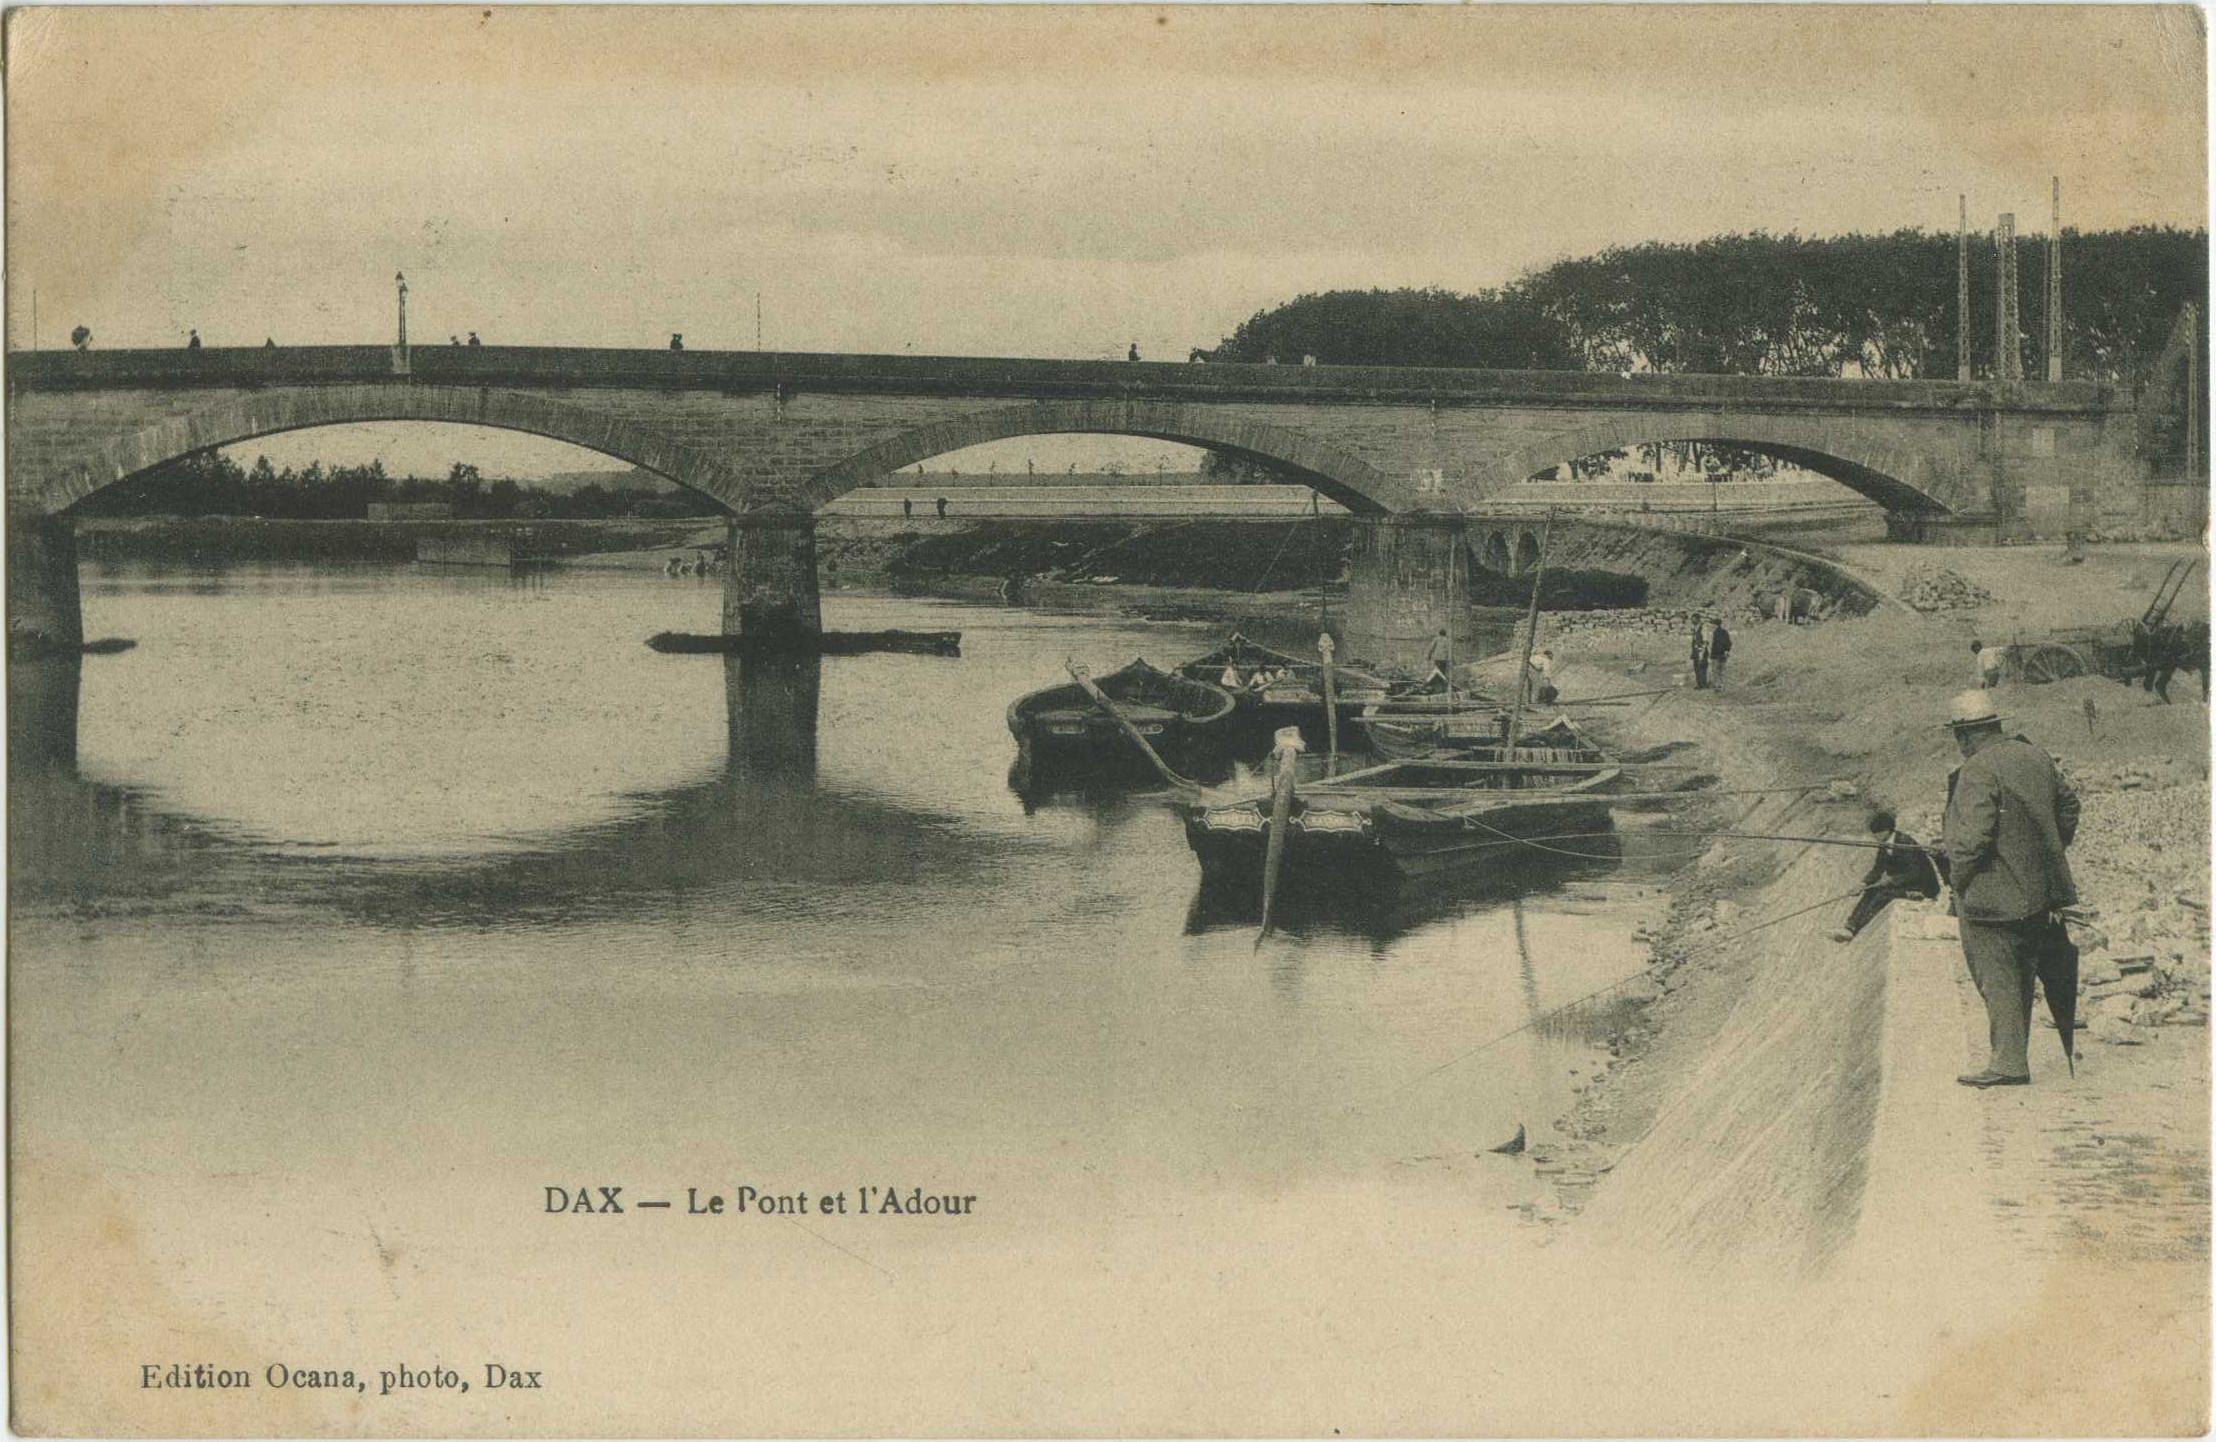 Dax - Le Pont et l'Adour